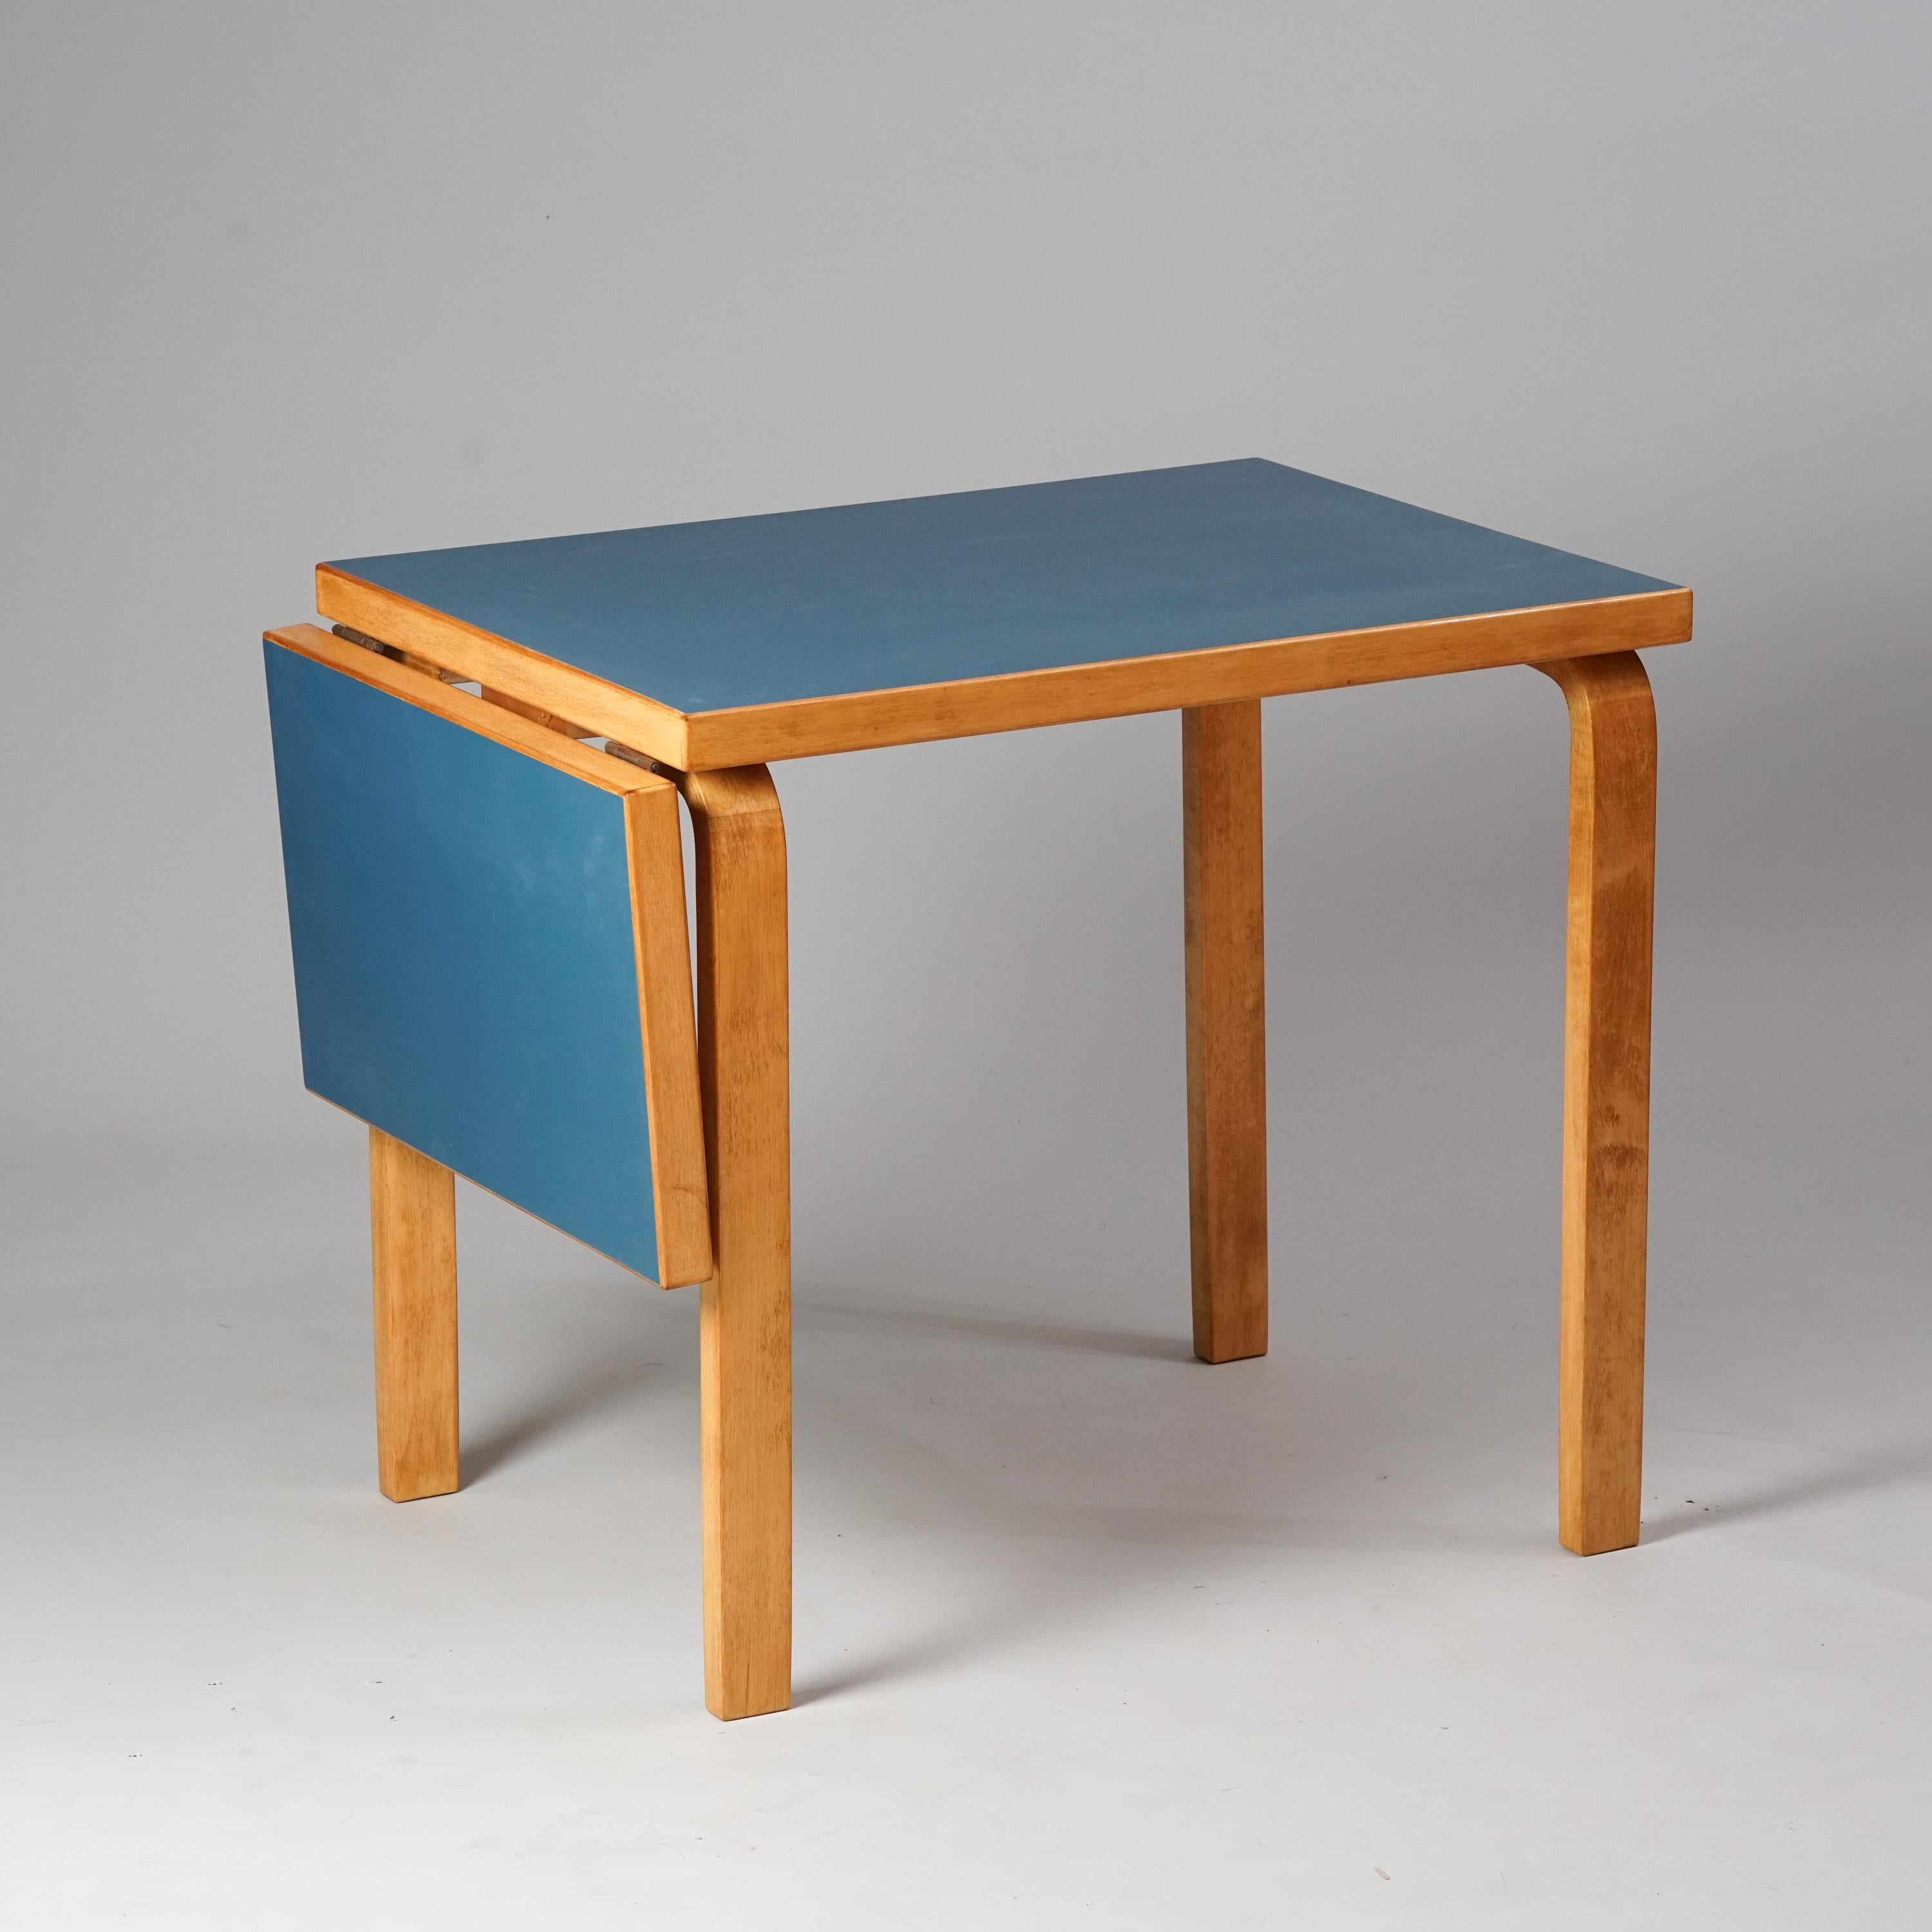 Table modèle DL82, conçue par Alvar Aalto, fabriquée par Oy Huonekalu- ja Rakennustyötehdas Ab, années 1950. Bouleau avec plateau en linoléum. La table comporte une partie extensible qui peut être repliée sur le côté. Bon état vintage, patine